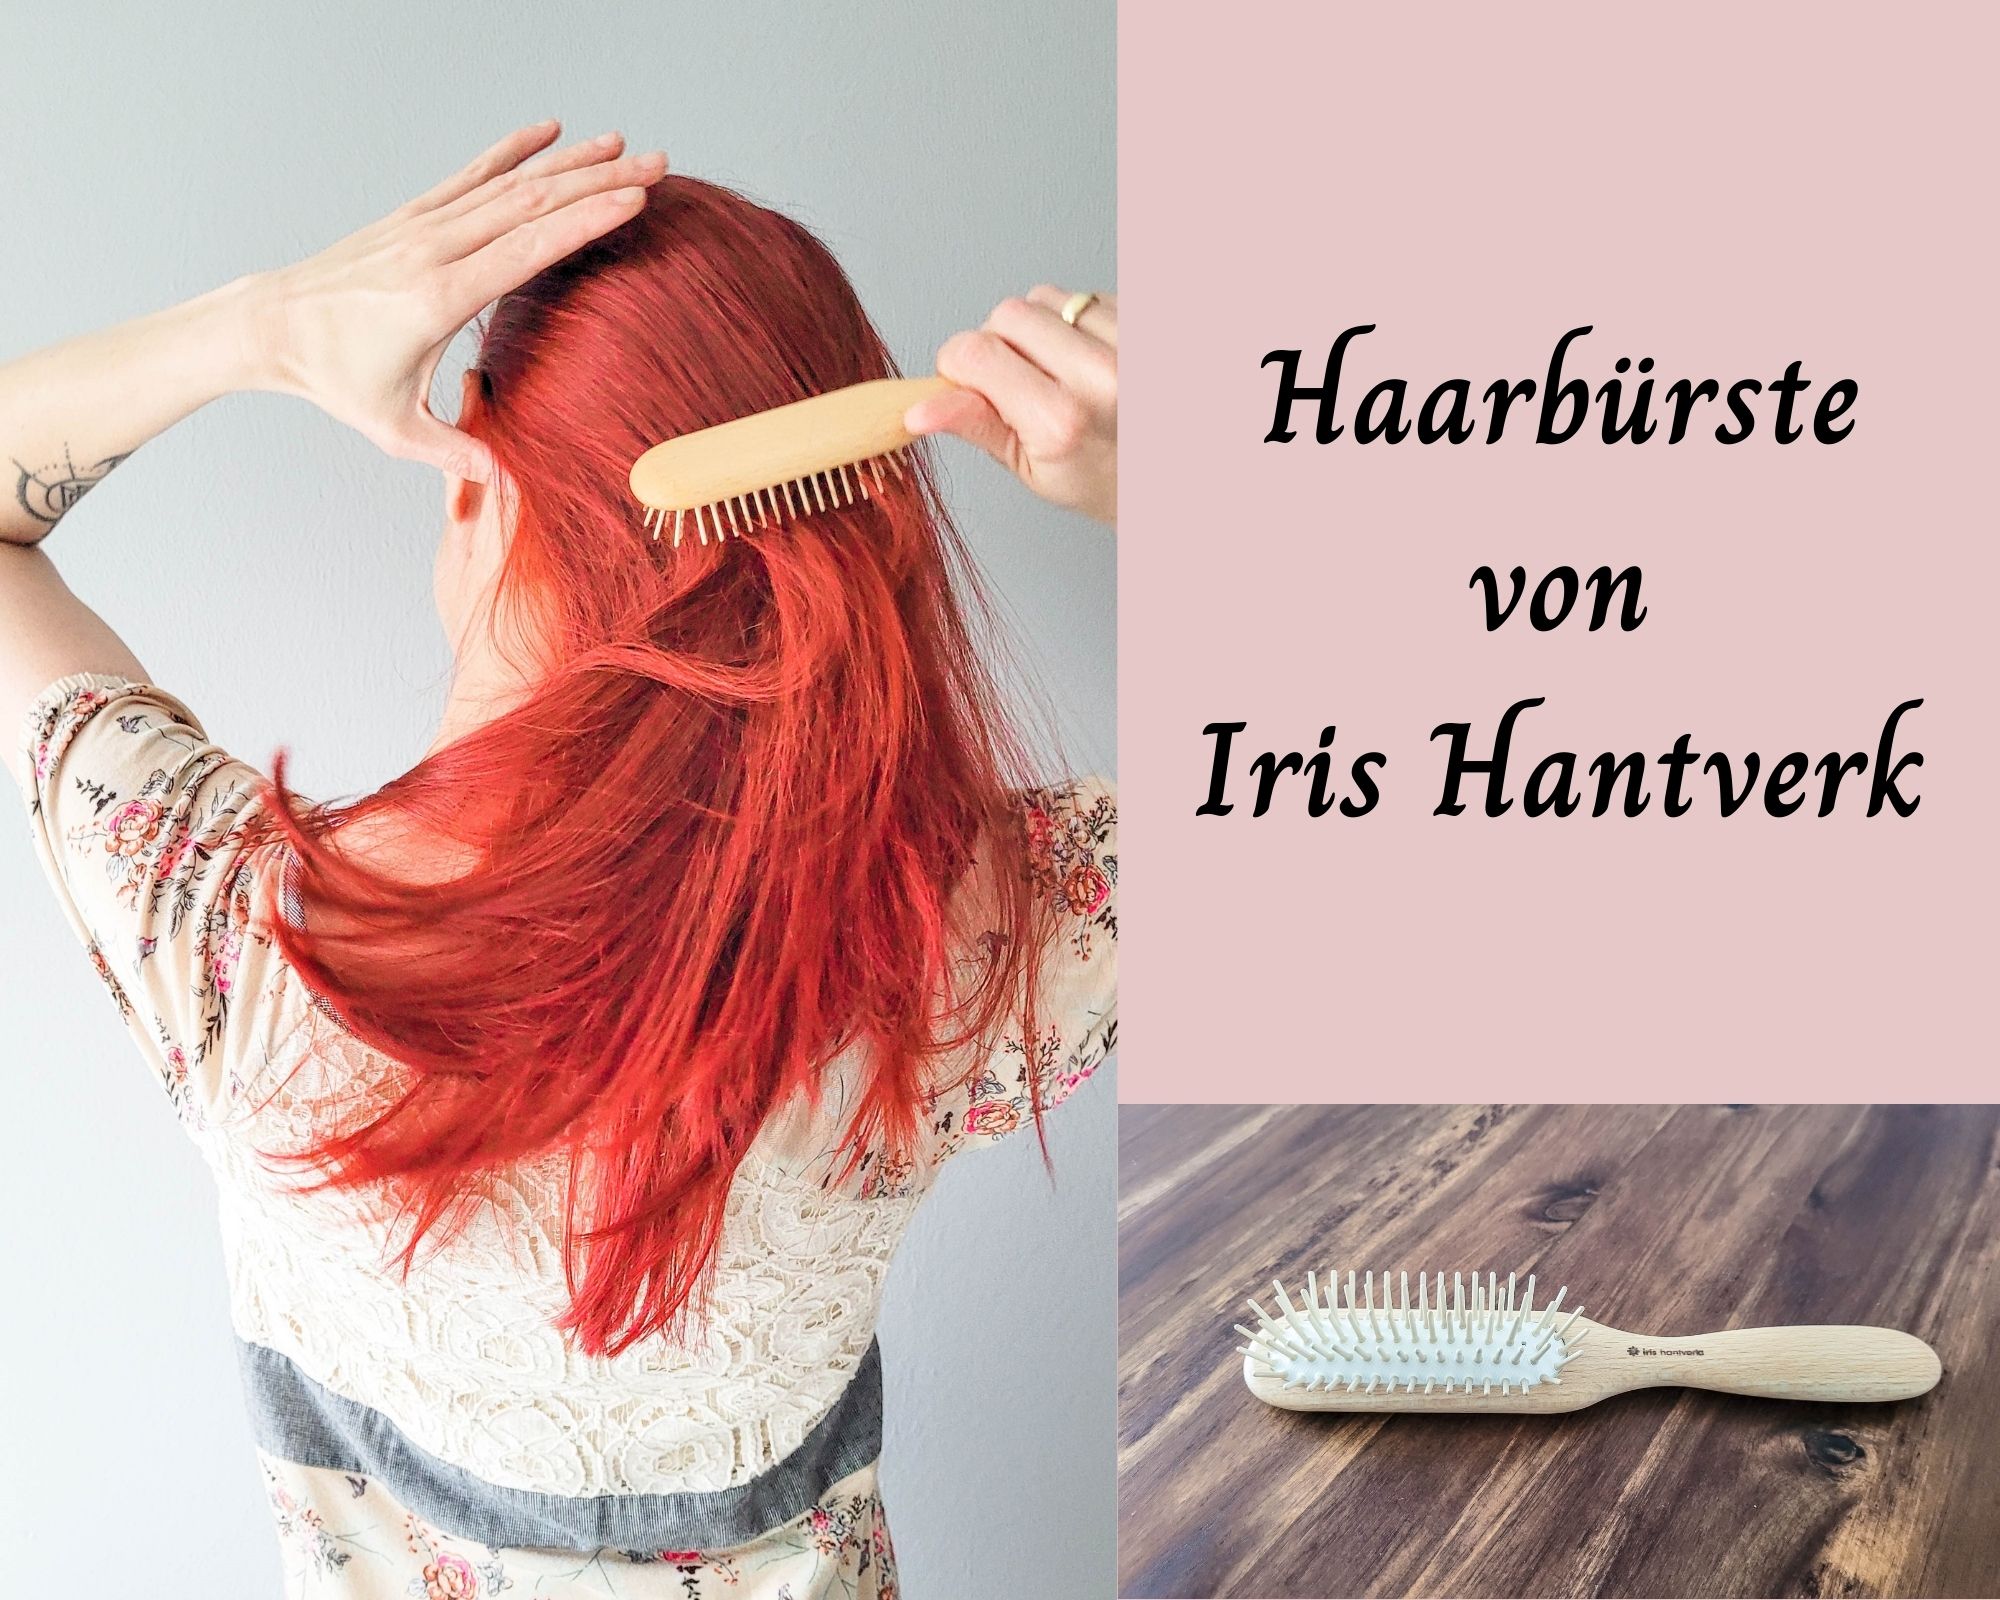 Haarbürste von Iris Hantverk
